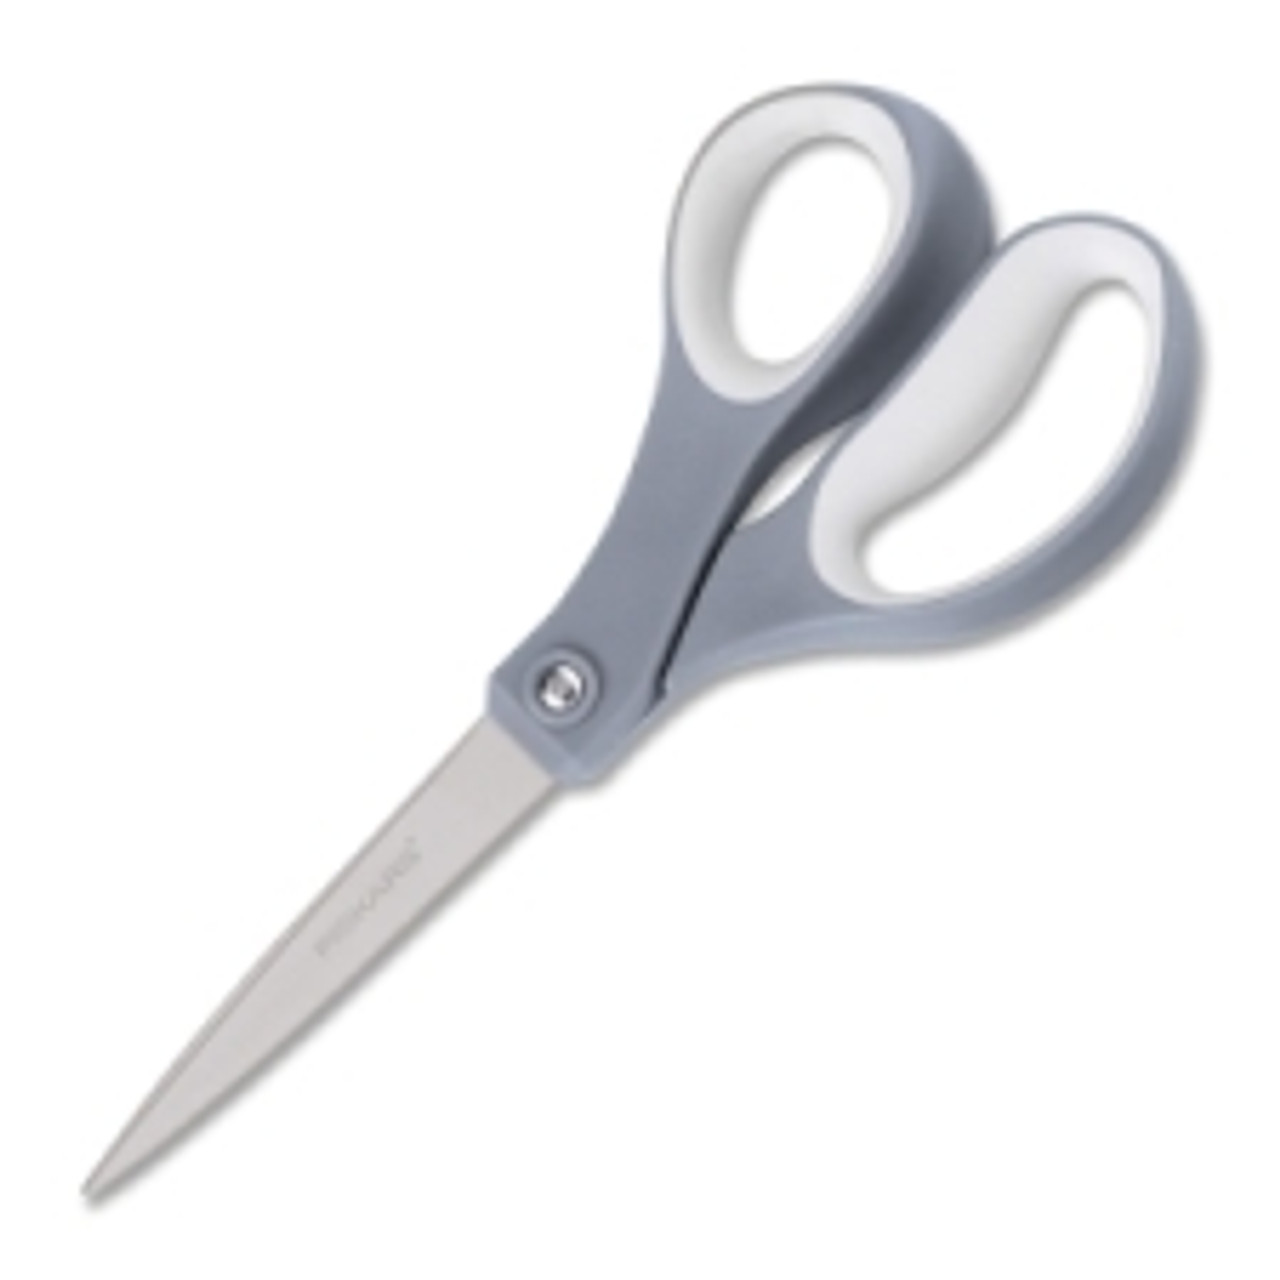 Fiskars Scissors Performance Softgrip Titanium Scissors 8 2/Pk -  020335047204